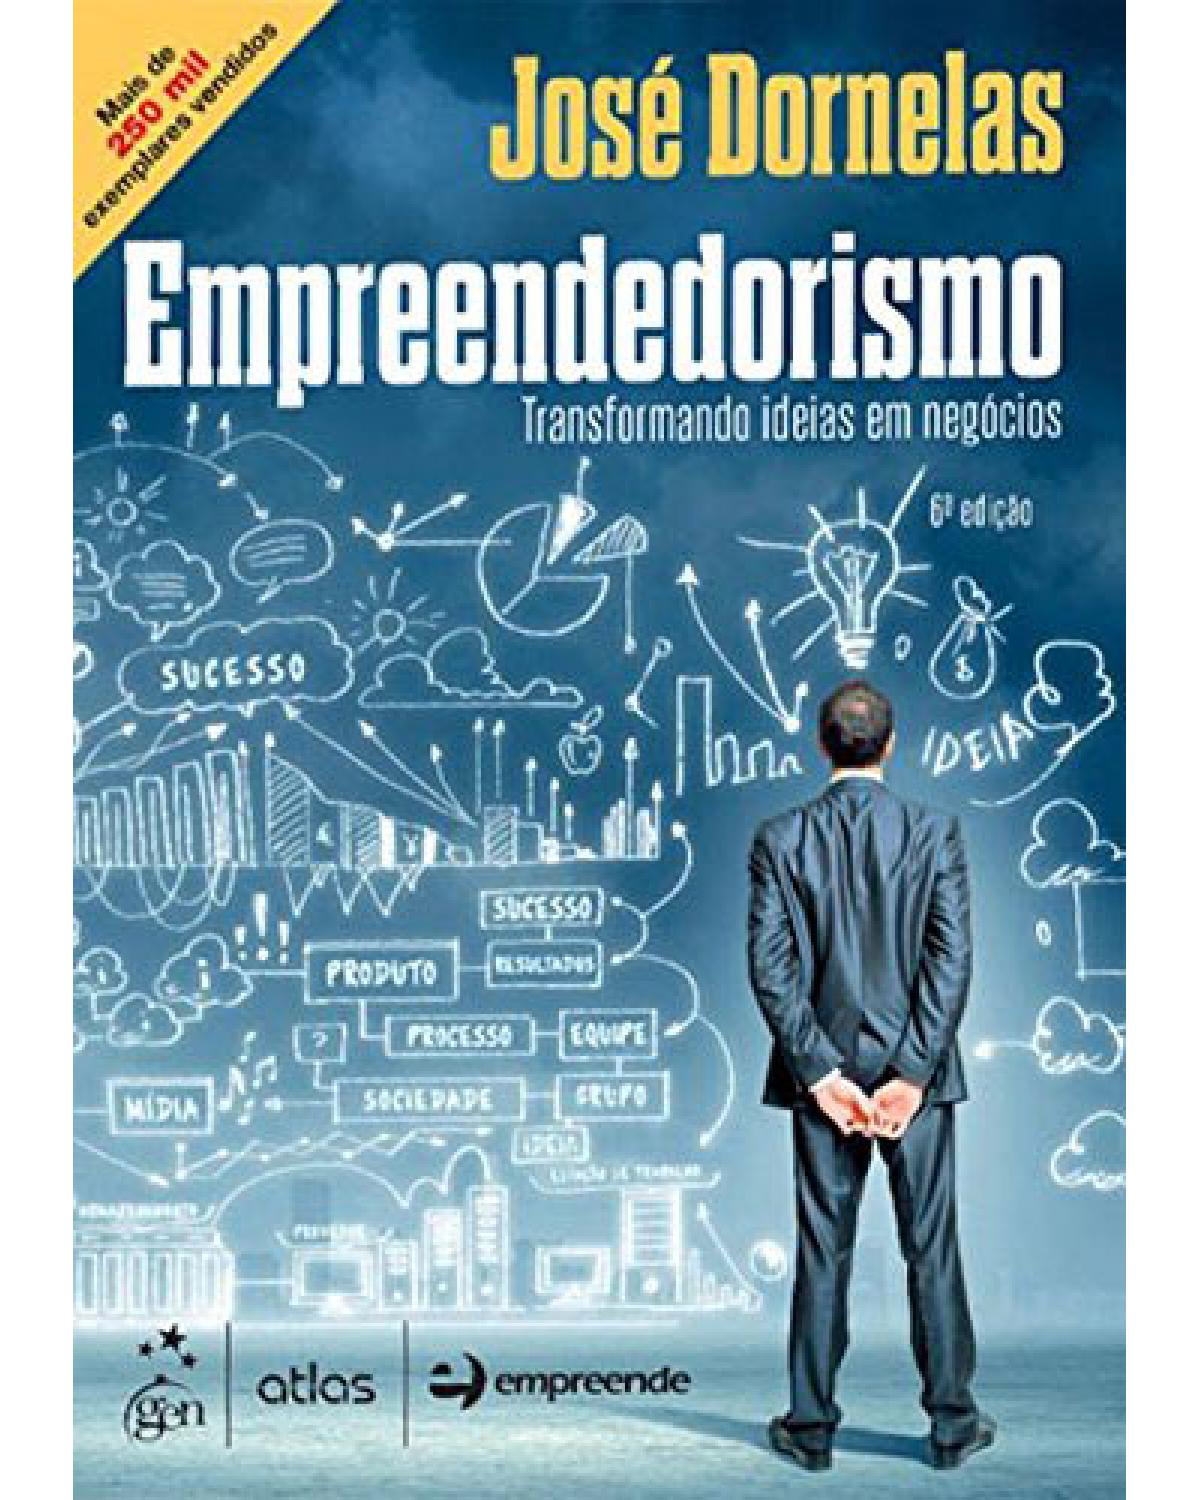 Empreendedorismo - Transformando ideias em negócios - 6ª Edição | 2016